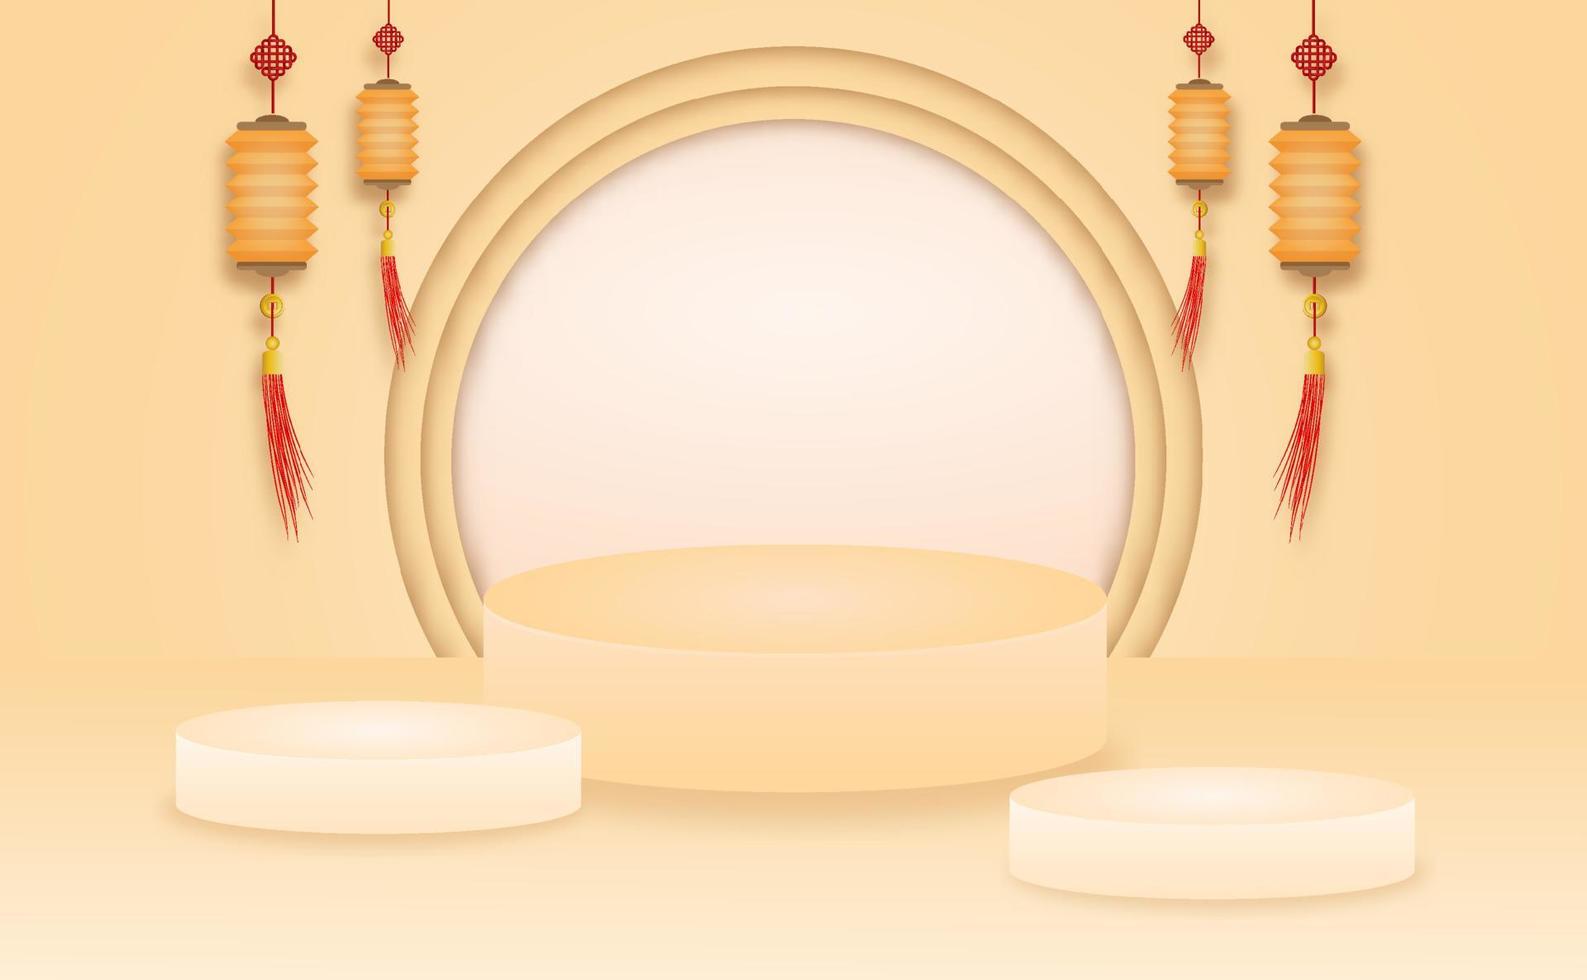 Escena de escenario de producto dulce moderno abstracto con podio de cilindro vacío de composición para fondo abstracto cosmético de producto. maqueta de forma geométrica en colores pastel naranja y lámpara. vector